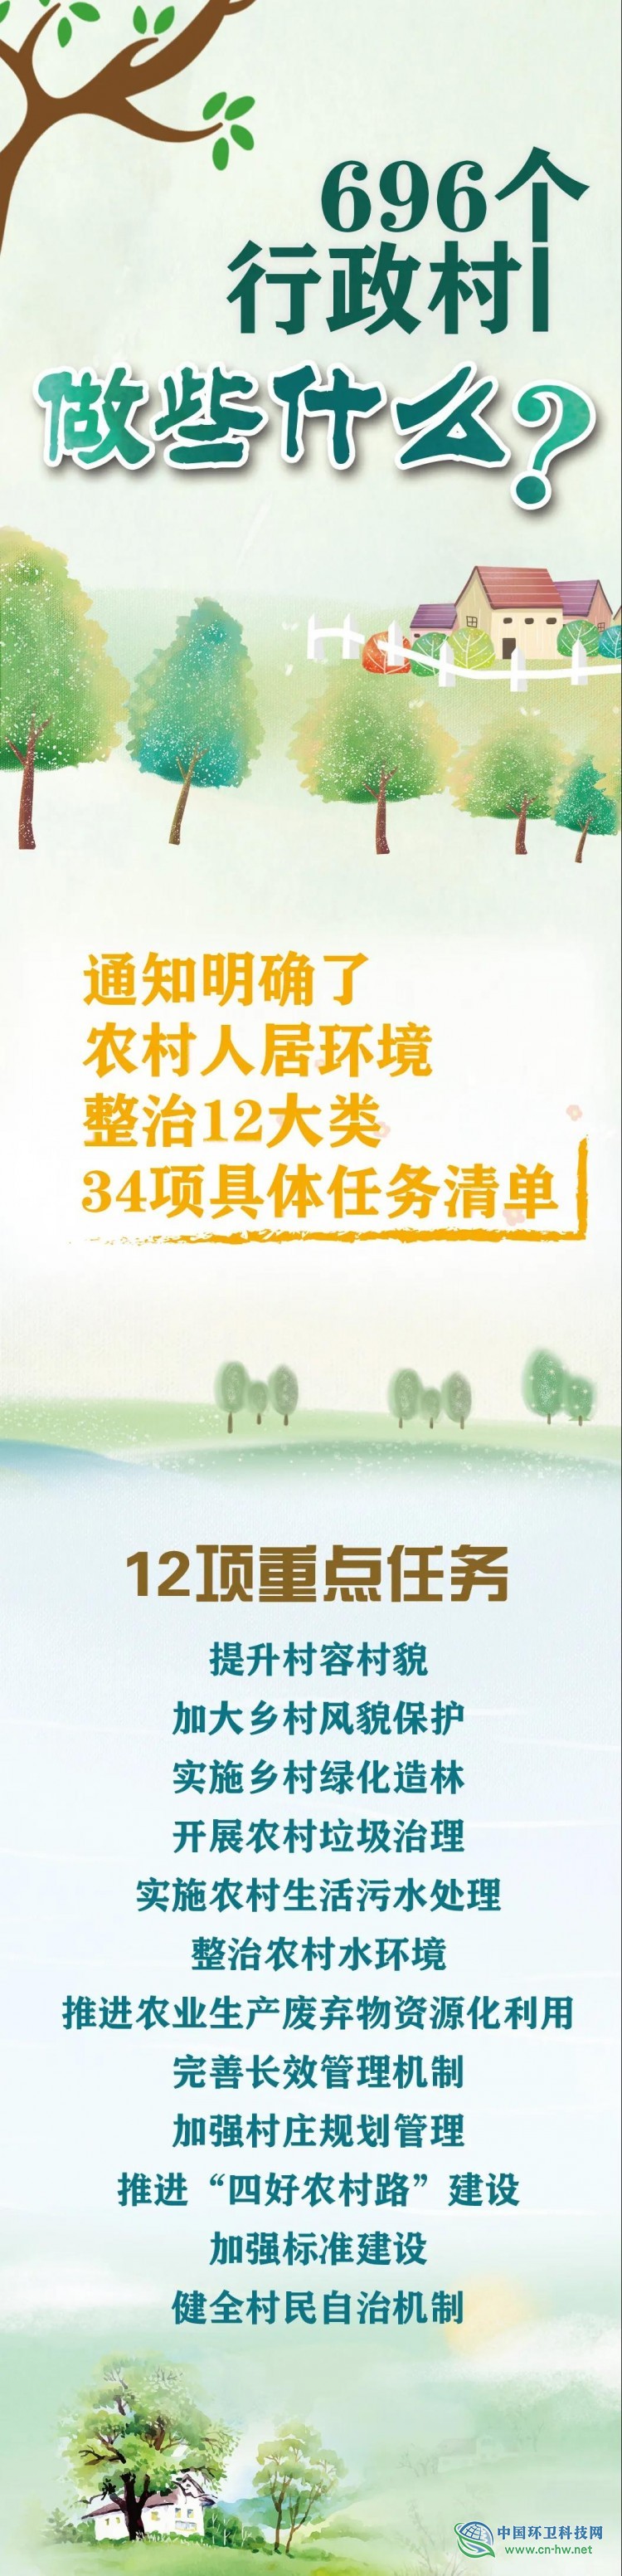 一图读懂 | 2020年上海市农村人居环境整治任务清单